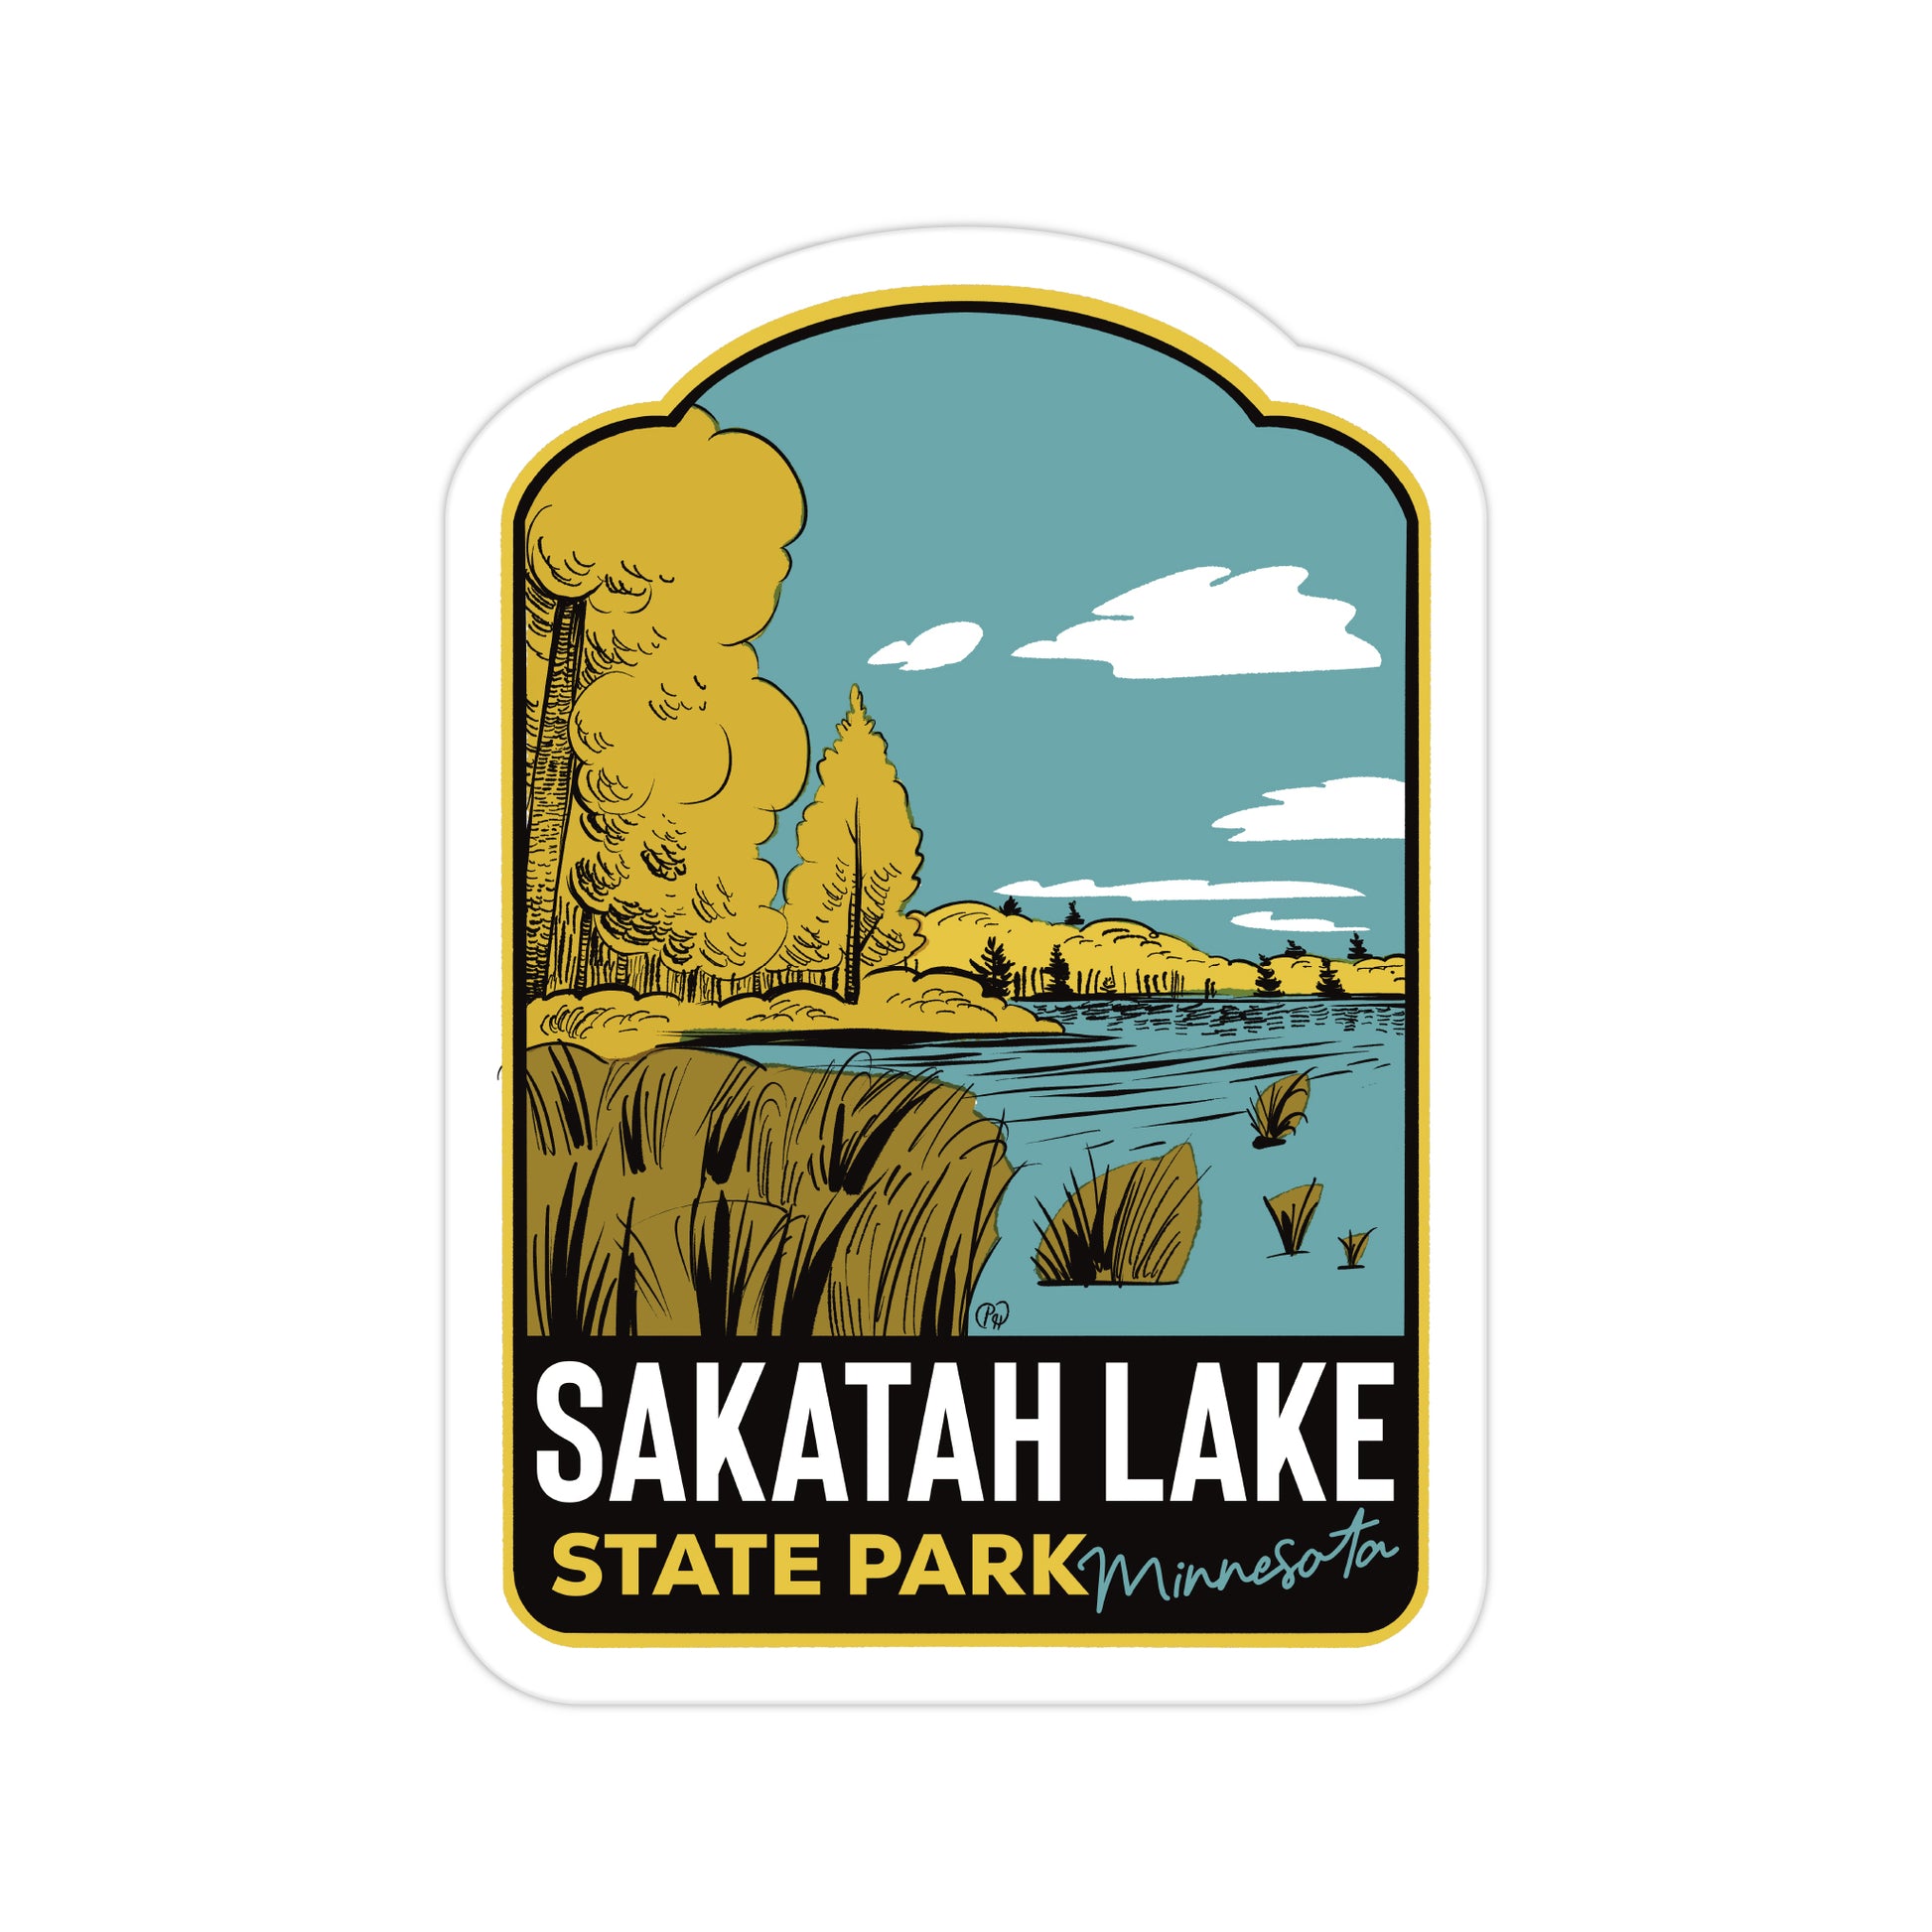 A sticker of Sakatah Lake State Park